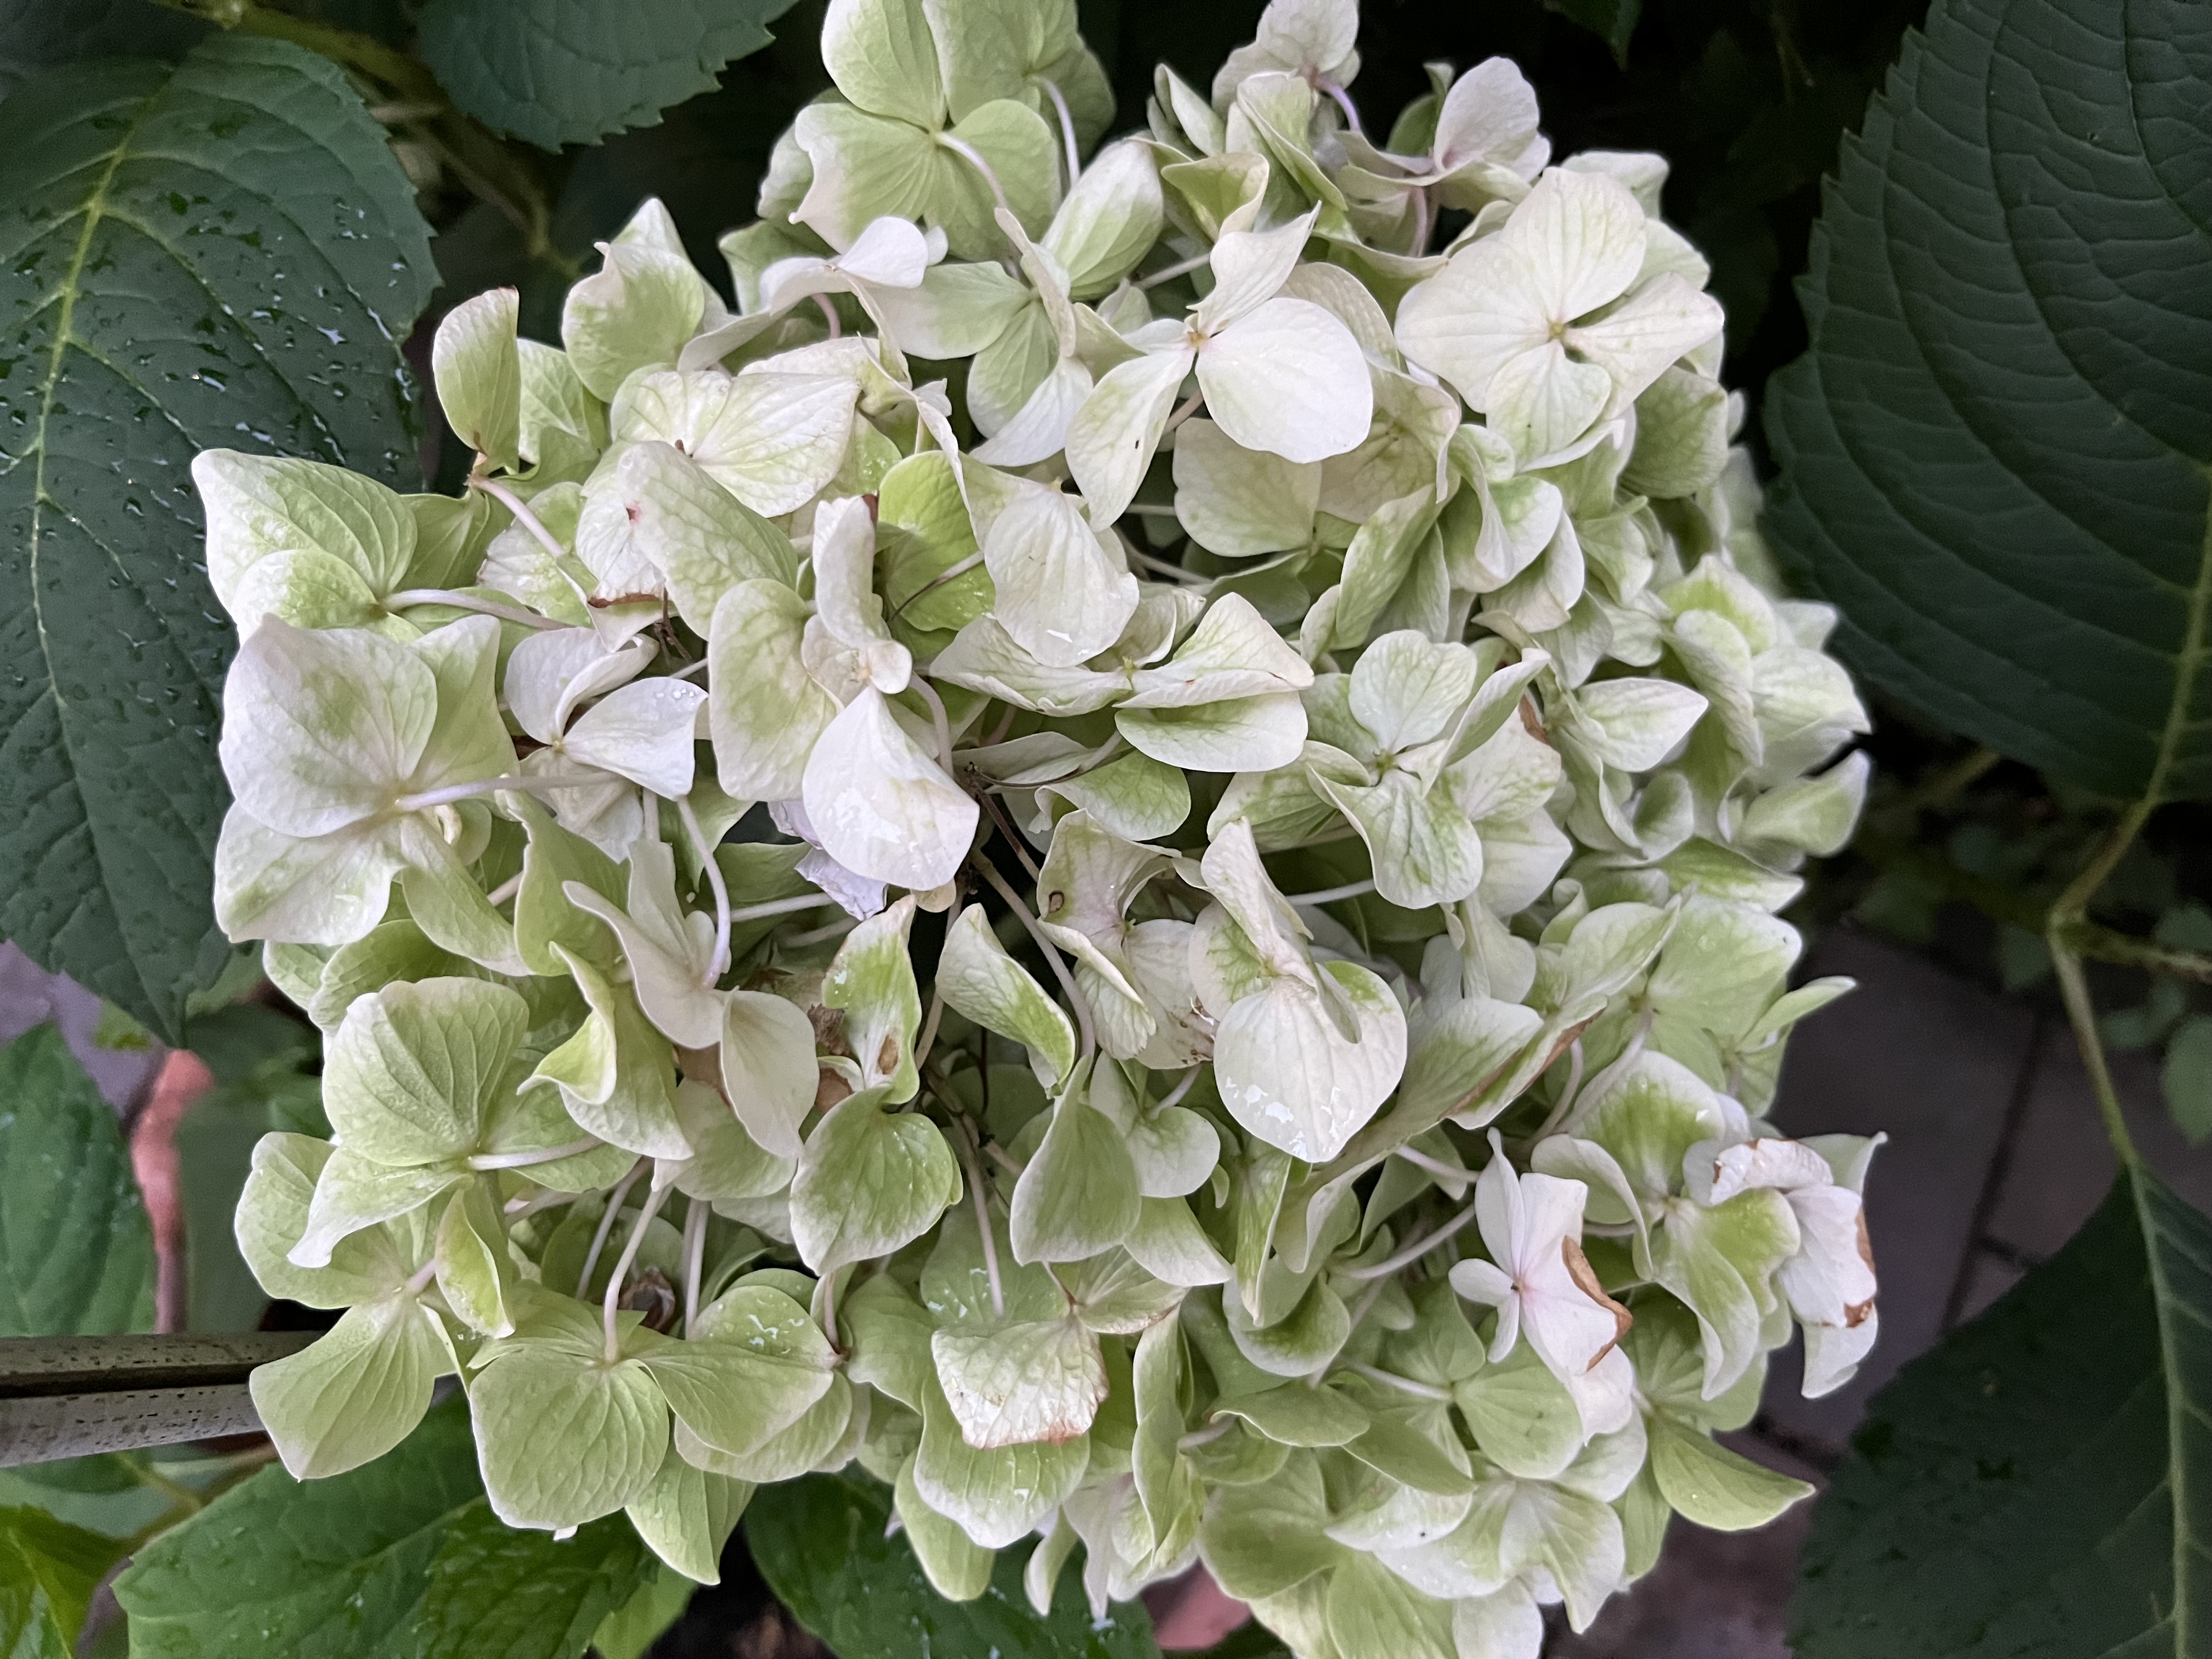 Blütenstand von 'Otaksa' nach der Blütezeit